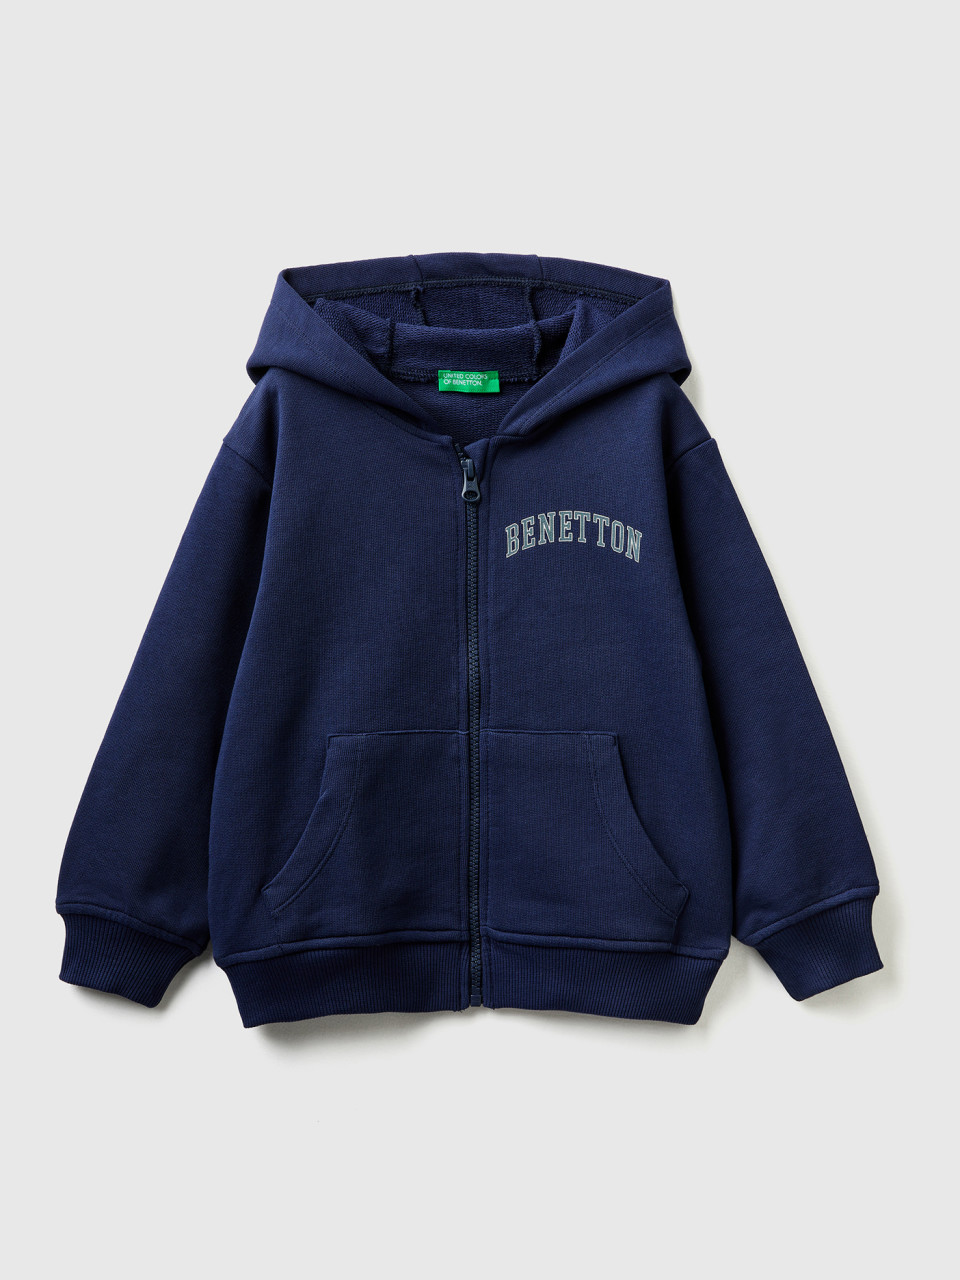 Benetton, Hoodie With Logo, Dark Blue, Kids